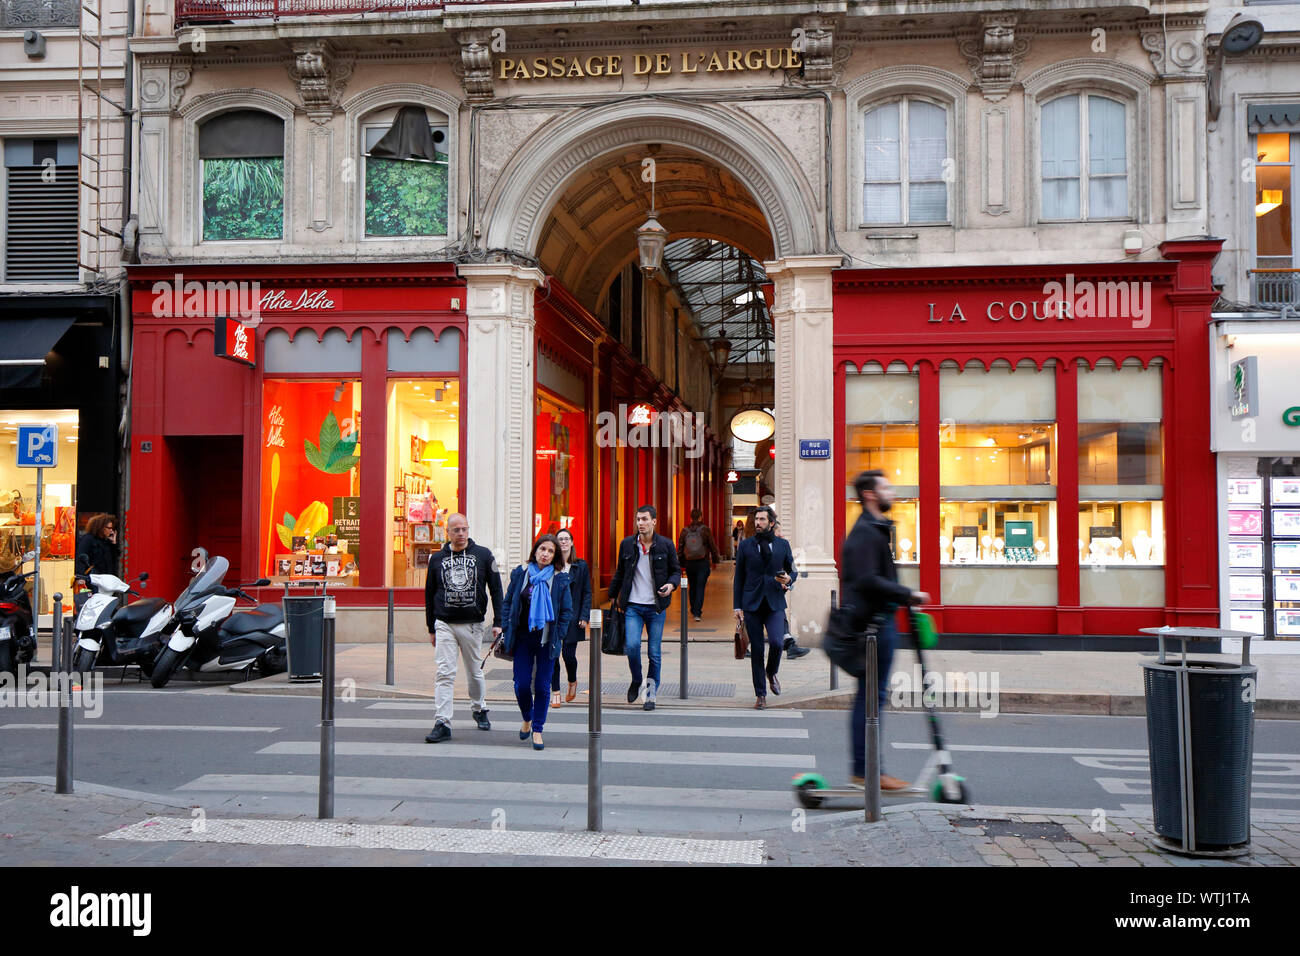 Passage de l'Argumentieren, Rue de Brest Eingang, Lyon, Frankreich Stockfoto